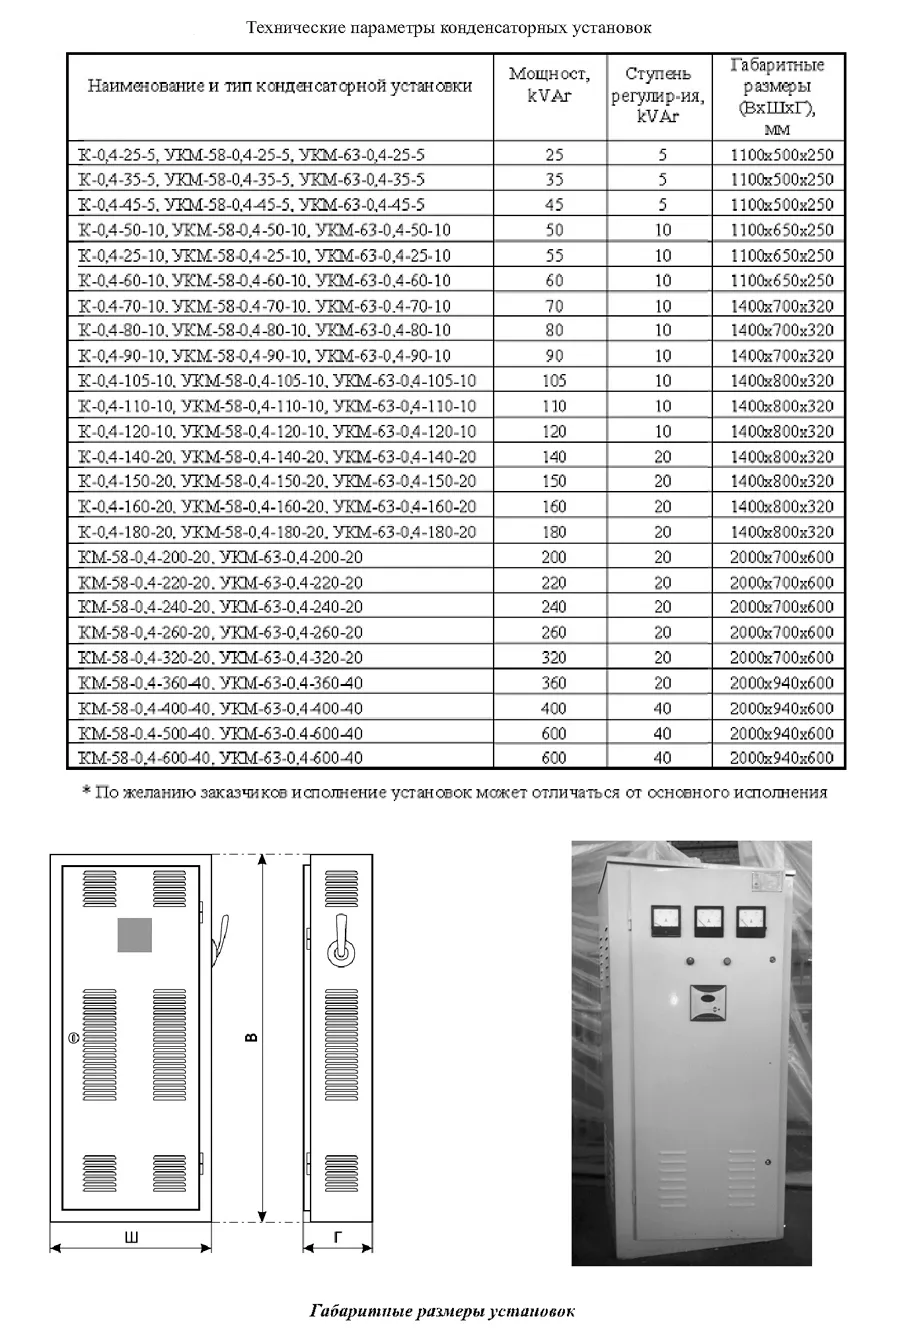 Конденсаторные установки типа УК-0,4, УКМ-58-0,4, УКМ-63-0,4#3